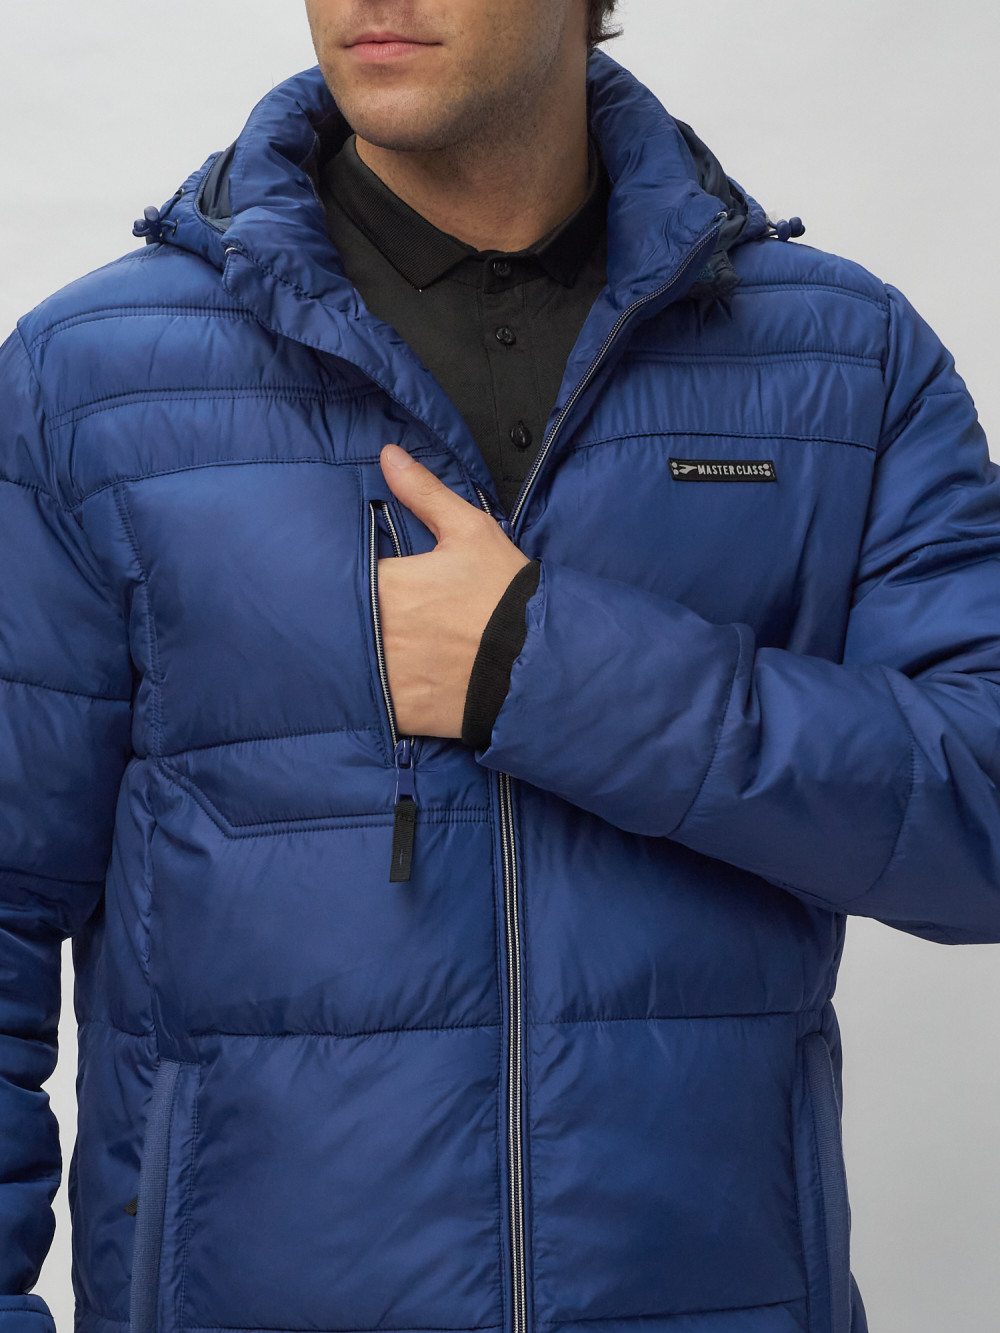 Купить куртку мужскую спортивную весеннюю оптом от производителя недорого в Москве 62190S 1